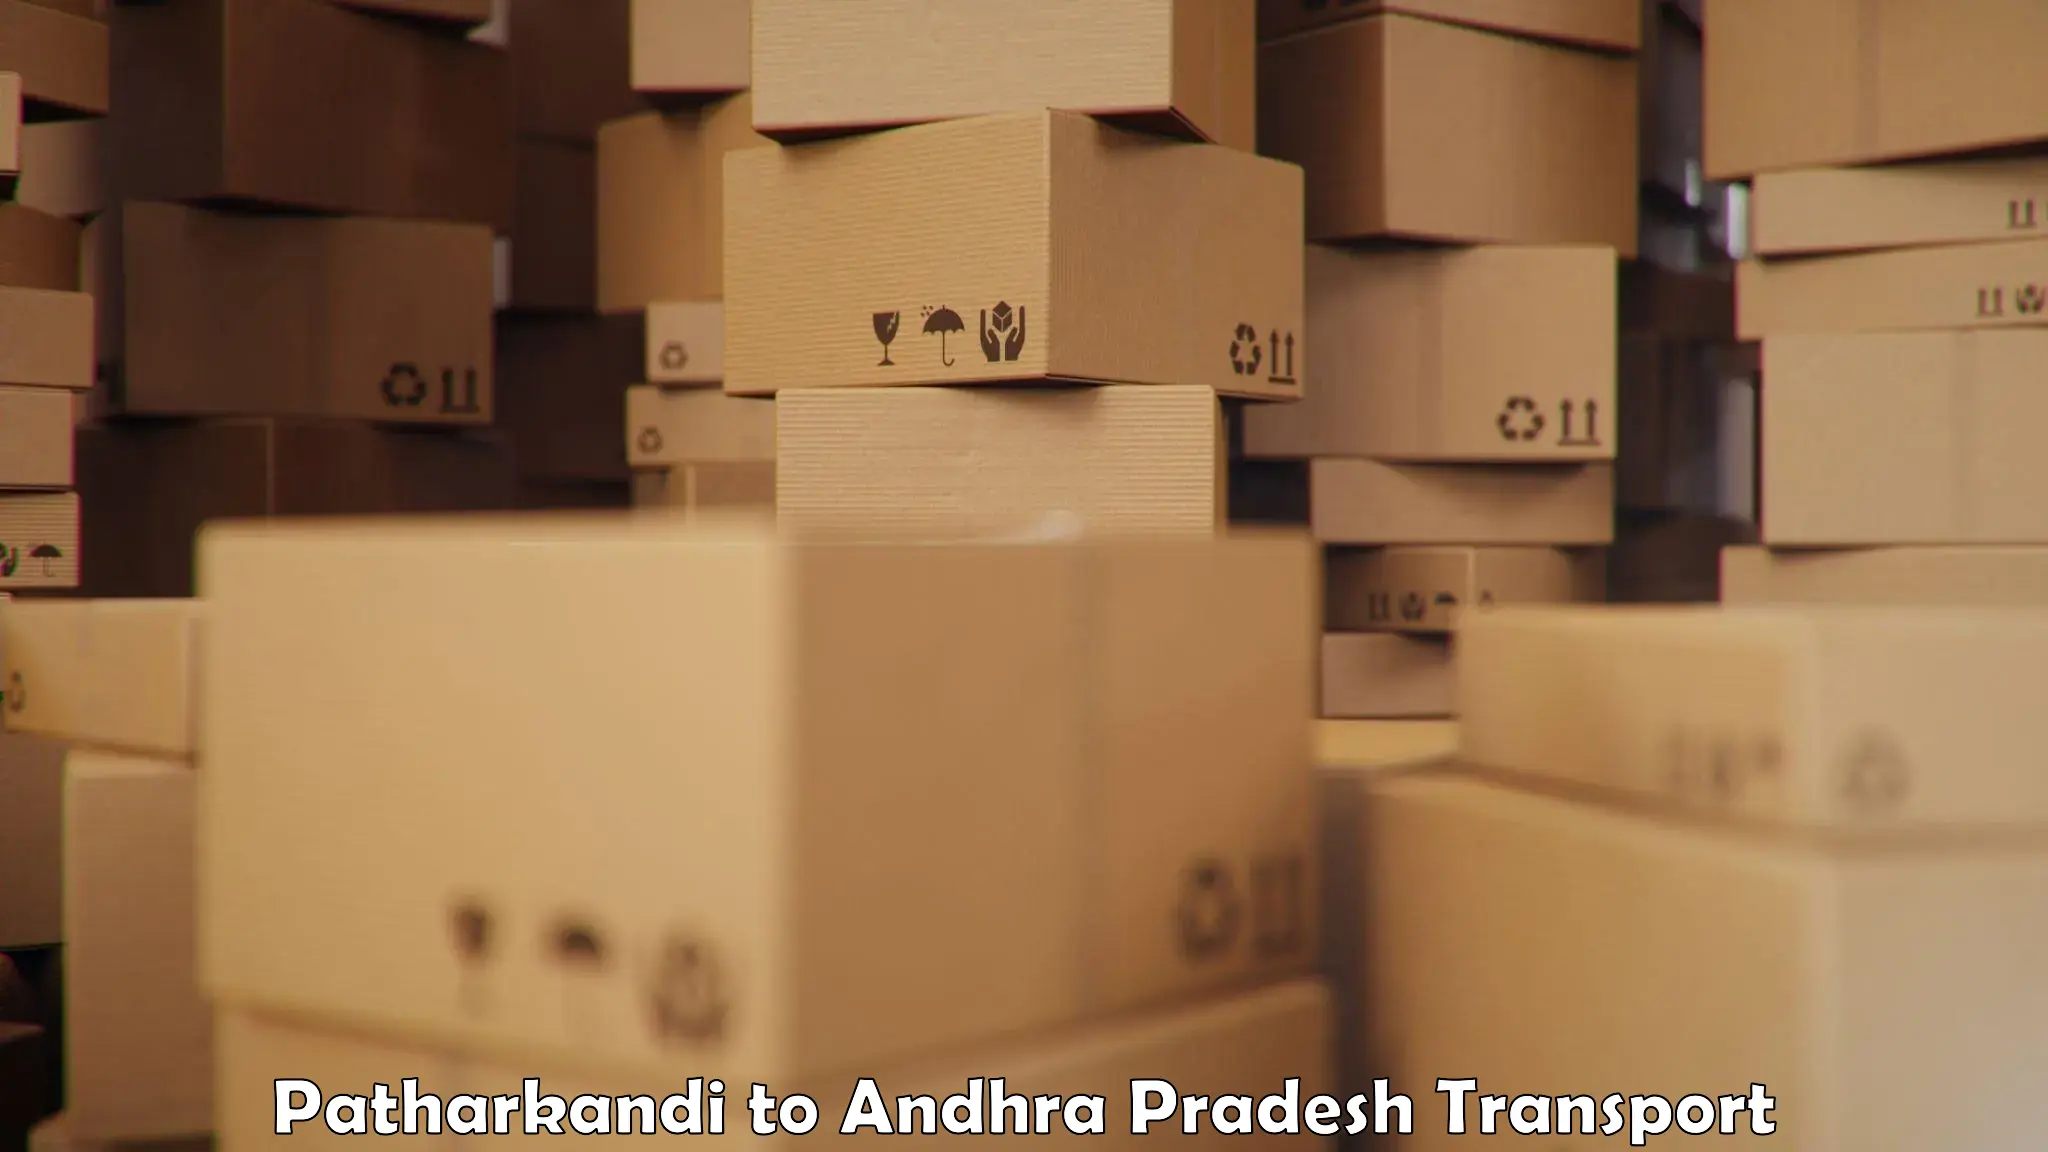 Cargo transportation services Patharkandi to Kathipudi